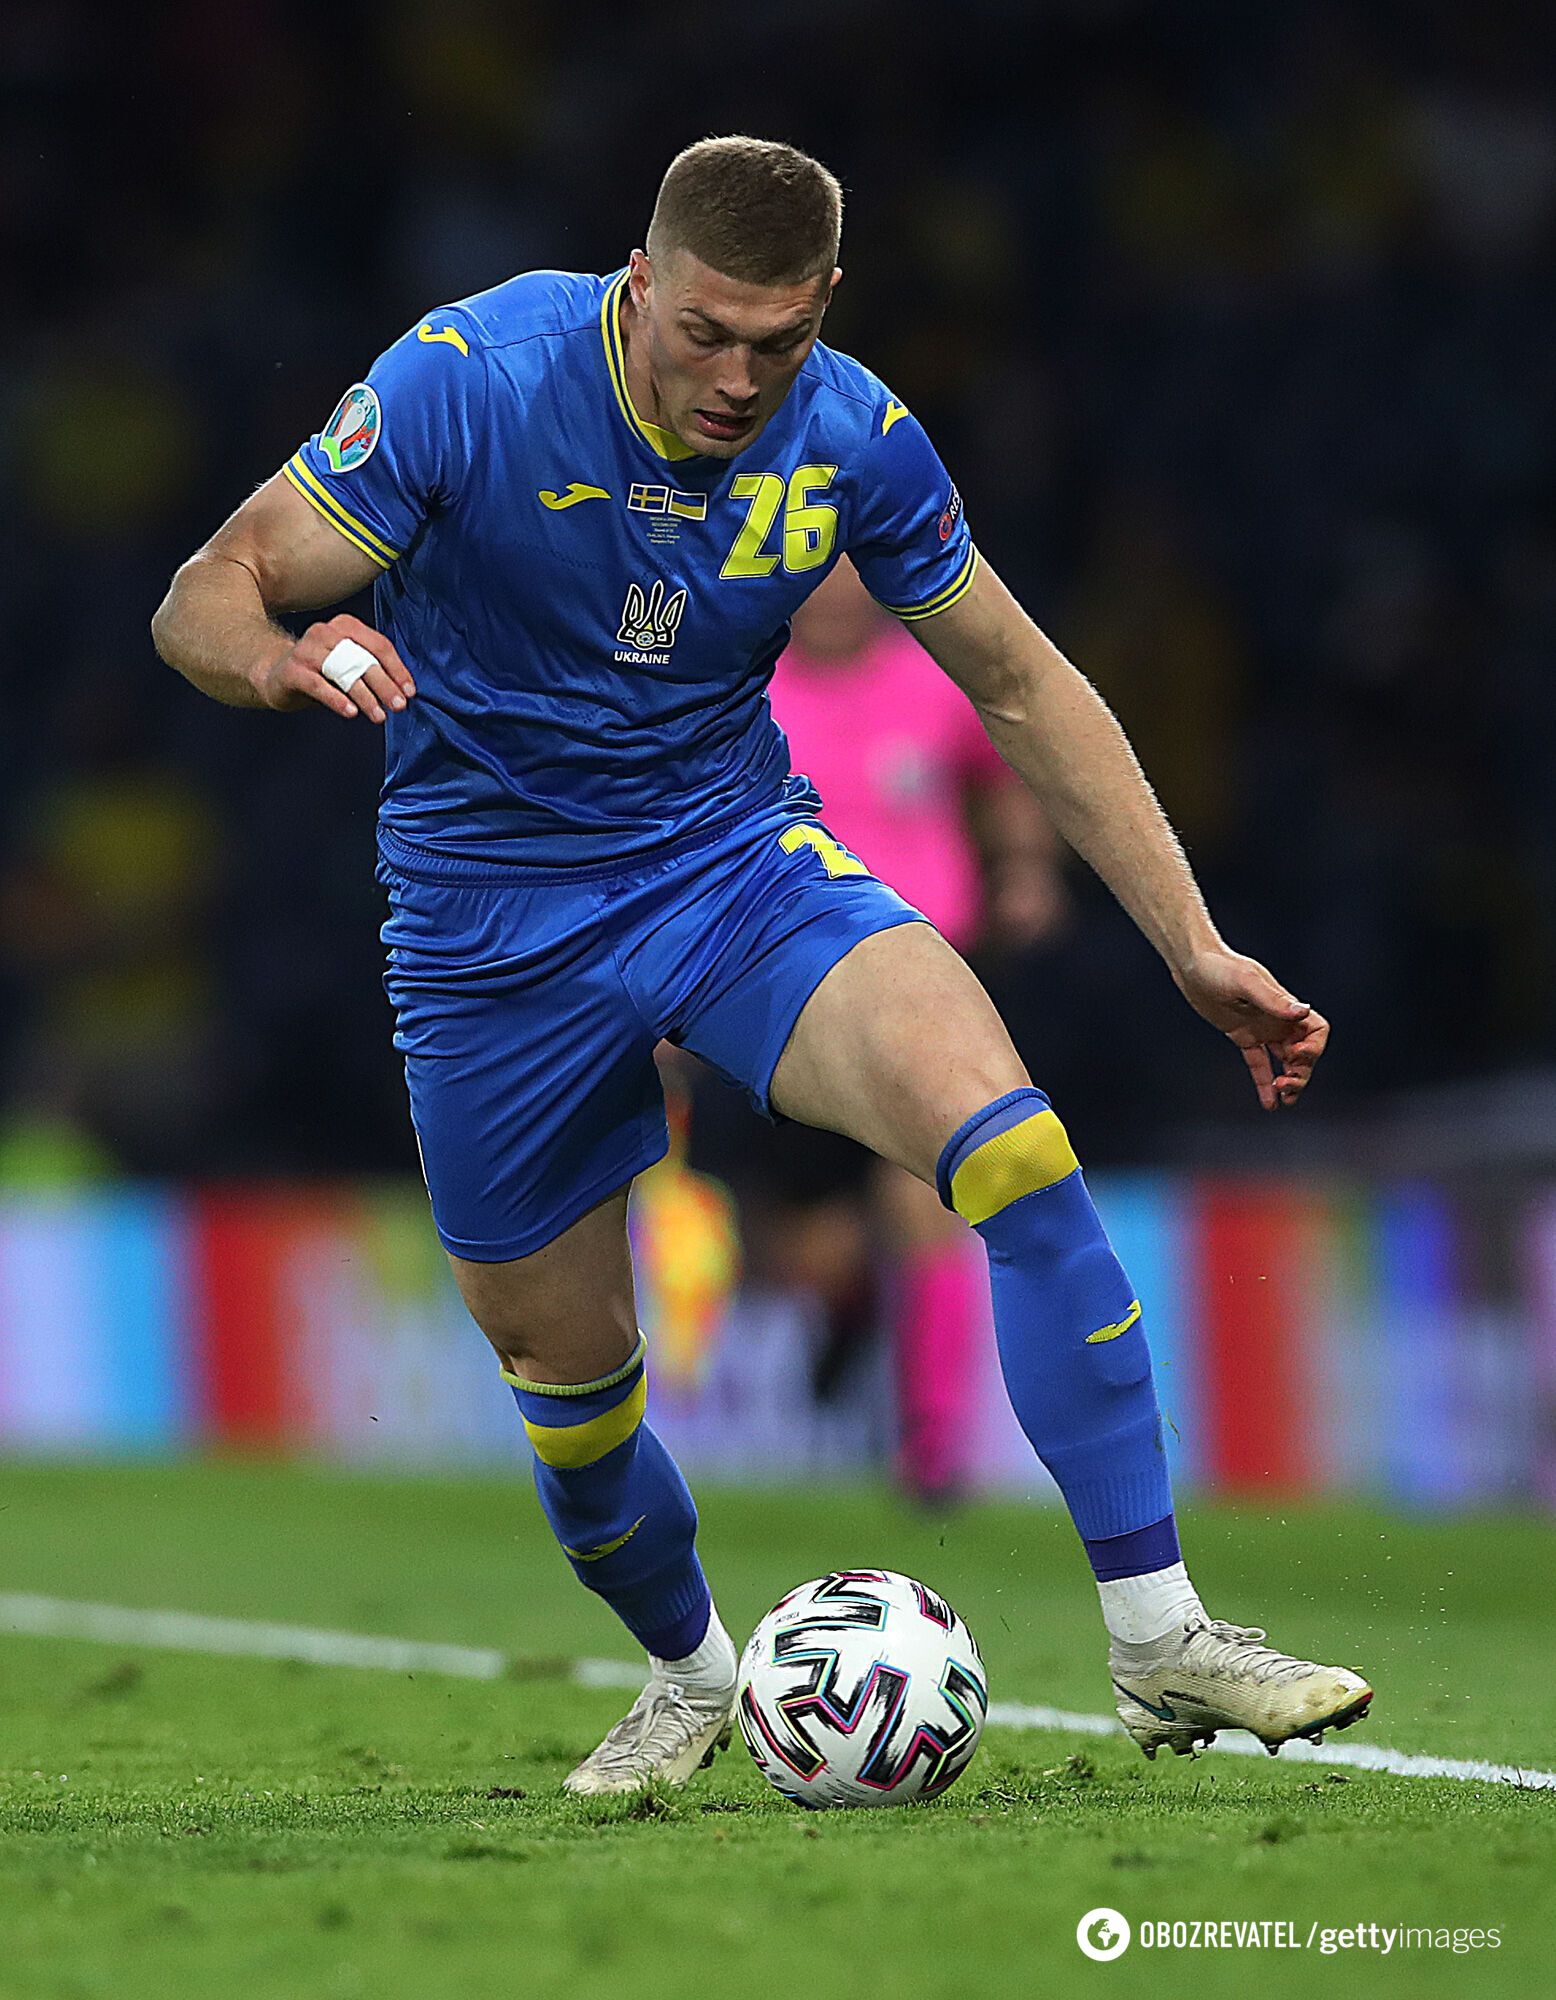 Ukraine footballer joins Spanish club: transfer details